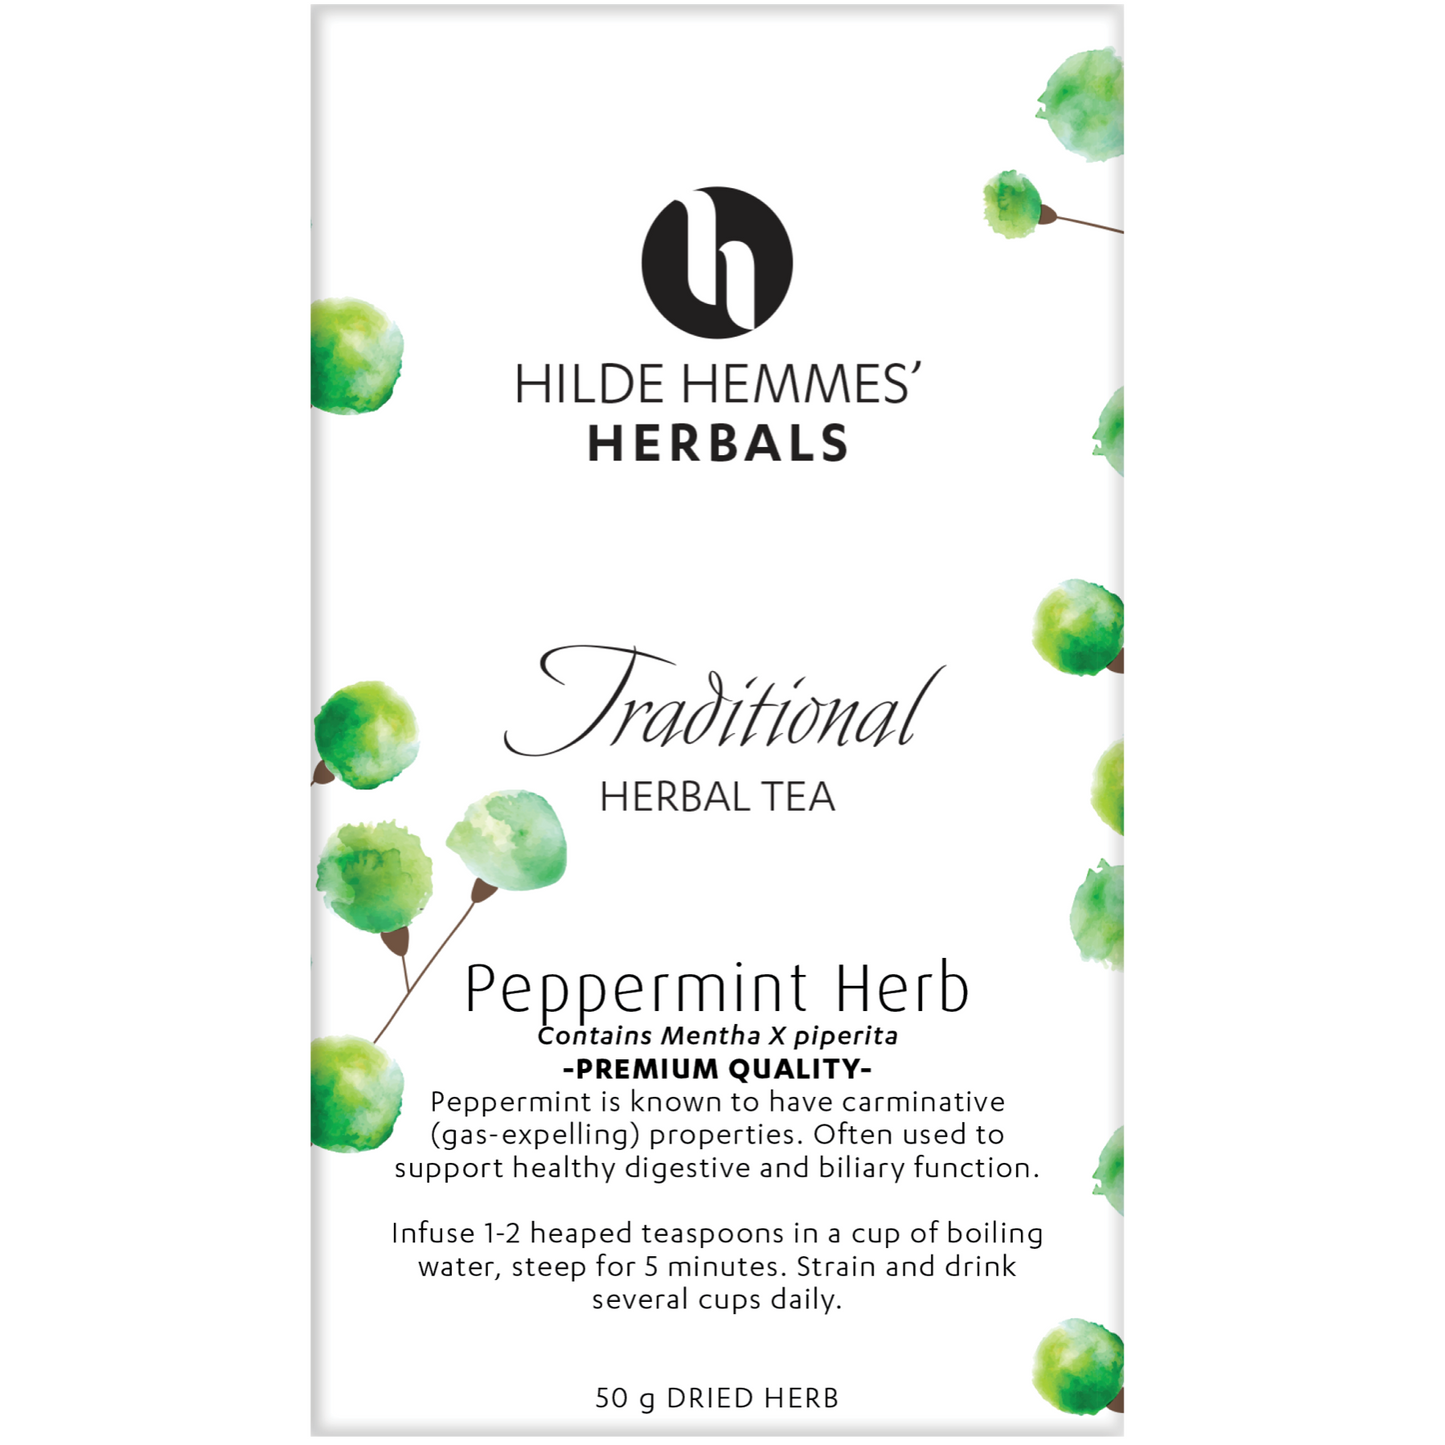 Hilde Hemmes Herbal's Tea 50g (Loose Leaf) Or 30 Tea Bags, Peppermint